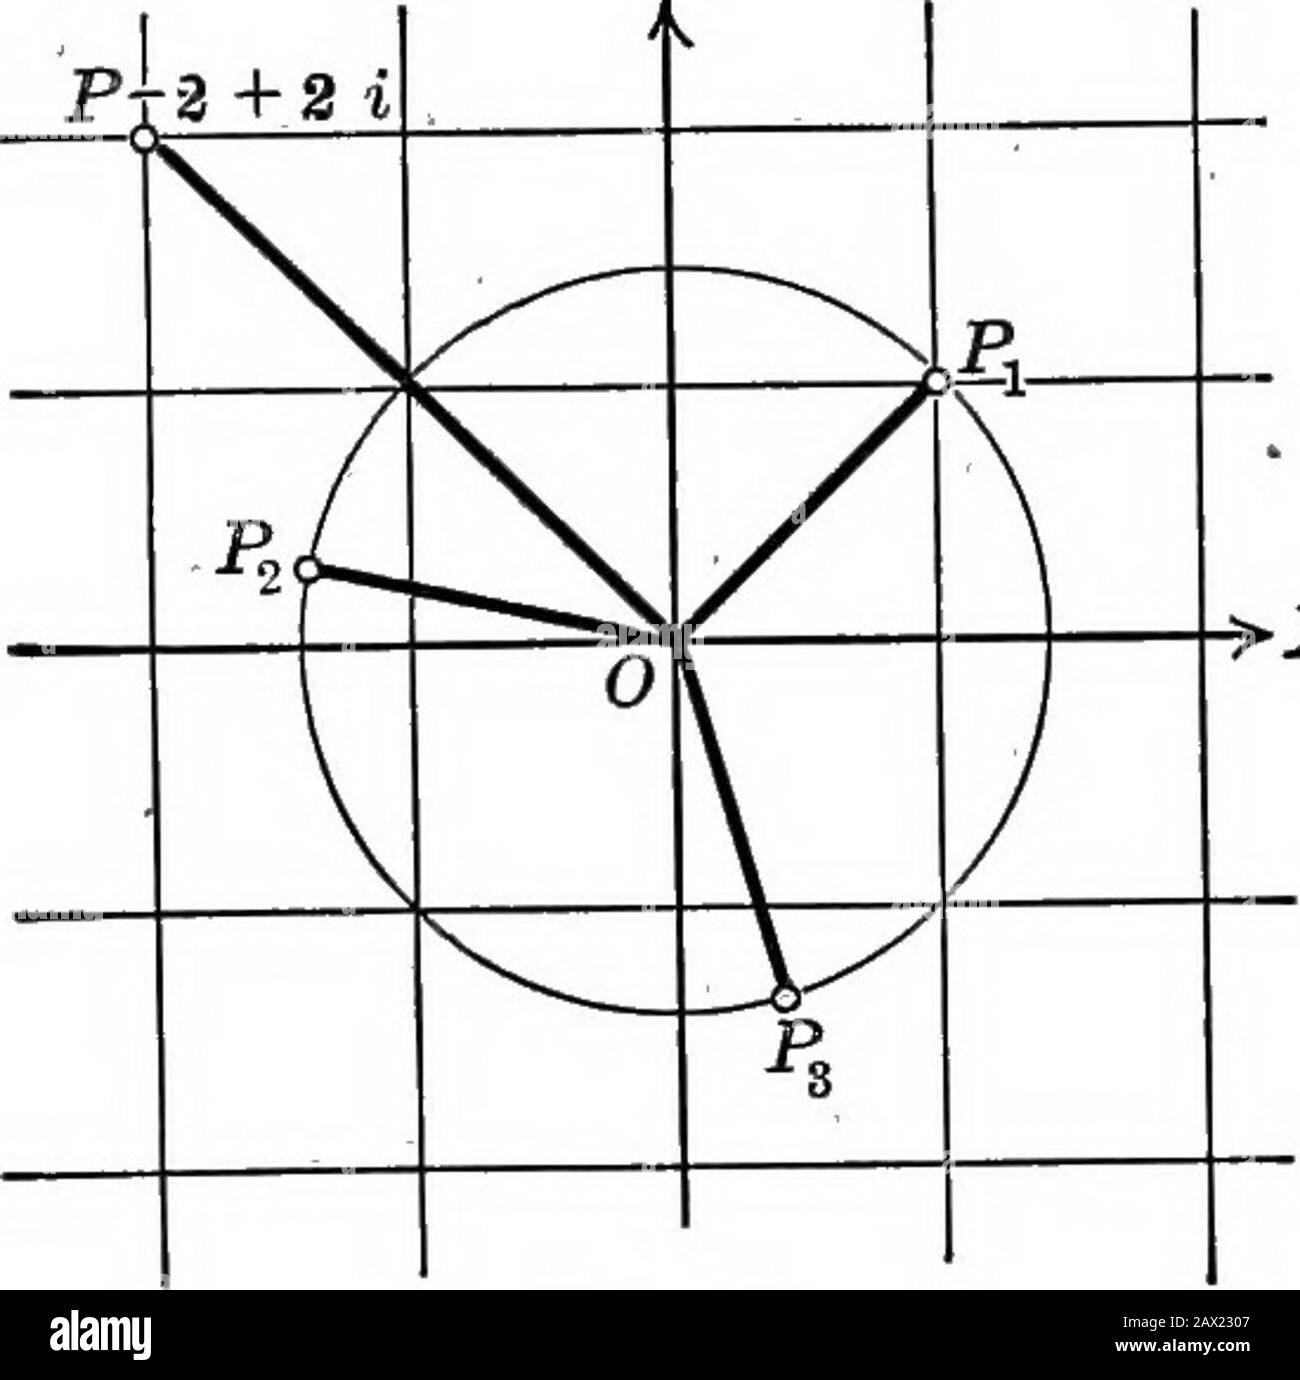 Algèbre de collège . ]^= V2 [cos (46f + m 120°) + i sin (45°+ m 120°) ]. Pour TO = 0, 1 et 2, cette expression - réduit à 1 + i, -^2(008 165° + i sin 165°), - ^^^^ V2 (cos 285° + i sin 285°) respectivement. Un de ces trois&gt;X numéros est une racine de cube de — 2 + 2 i.Les points Pi, Pj, P3 representingces trois nombres se trouvent à intervalles équiréduits sur un cercle de rayon ?/2(Fig. 23). Fig. 23. 10. Version 2 + 2. 11. V-8+ 8^31. 12. Vs + /3 i. 13. /64(oos 60° + i sin 60°) 14. v64(cos60 + isin60°). 15. v/64(cos 60 + i sin 60°). 16.18. vcos300° + isin800°. 17. v-4-4. Conseil : écrire sous la forme VO + i.19. O/W. Banque D'Images